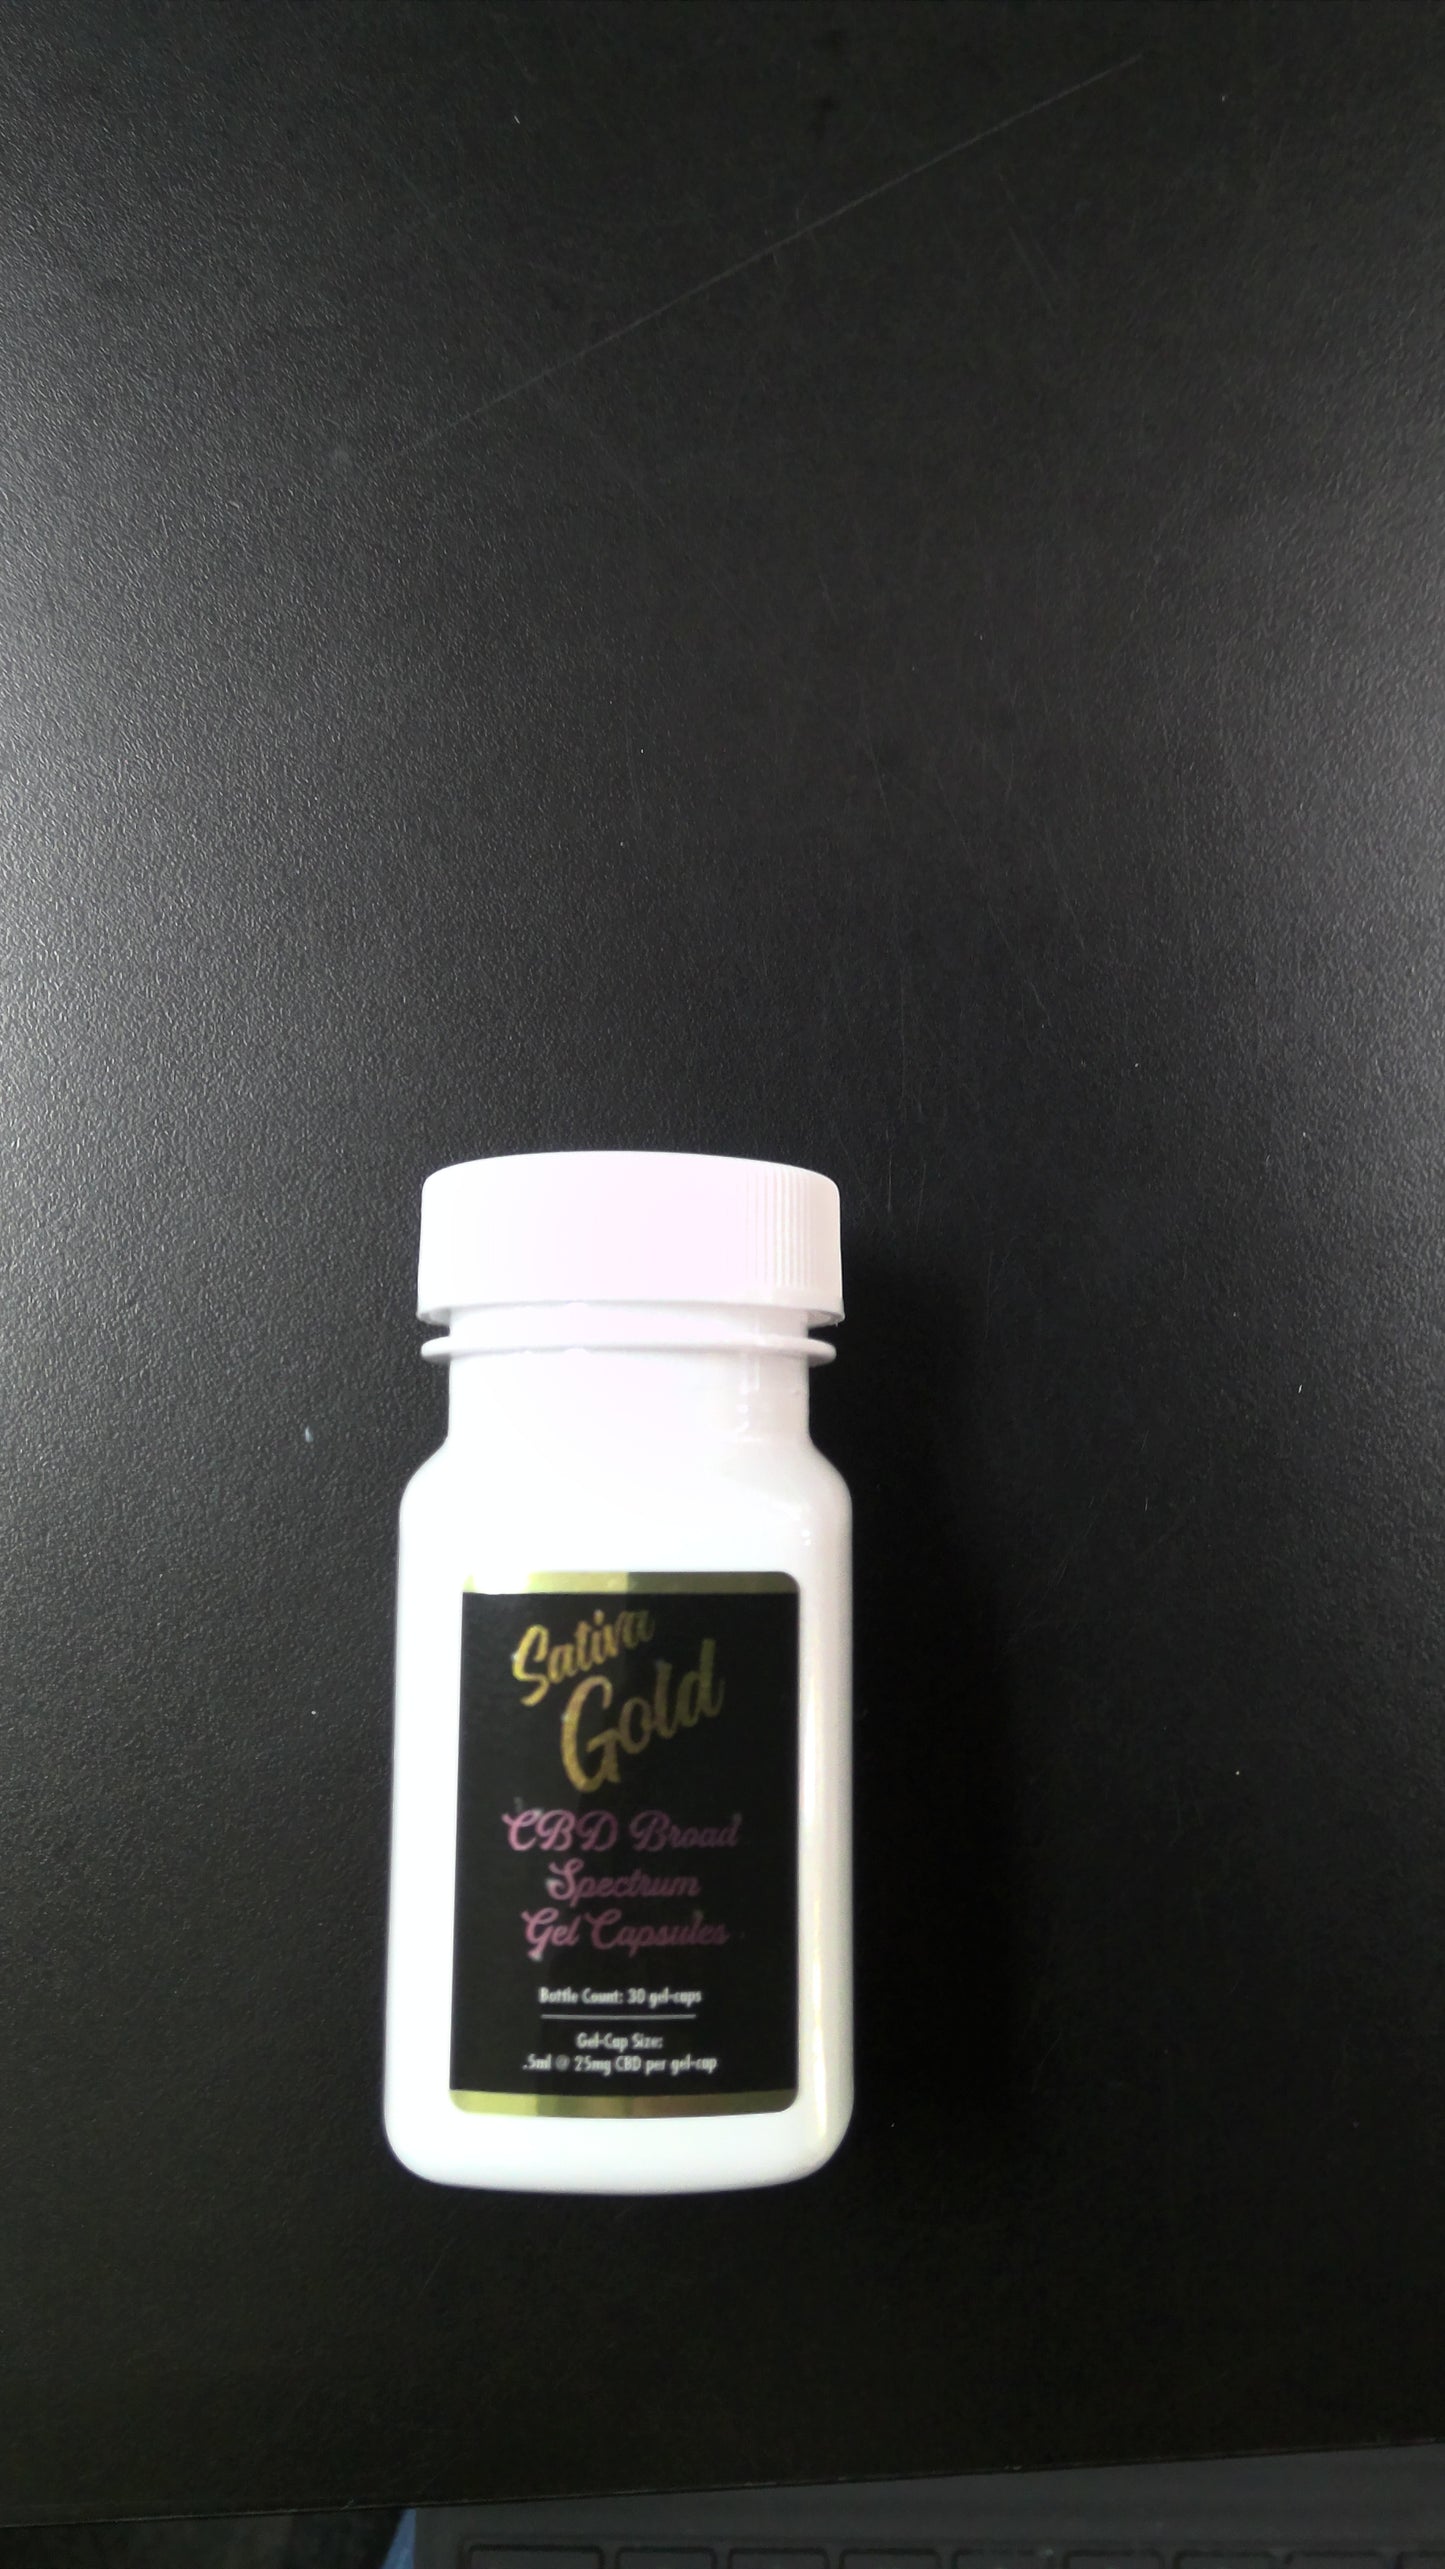 sativa goldbroa d spectrum gel capsules